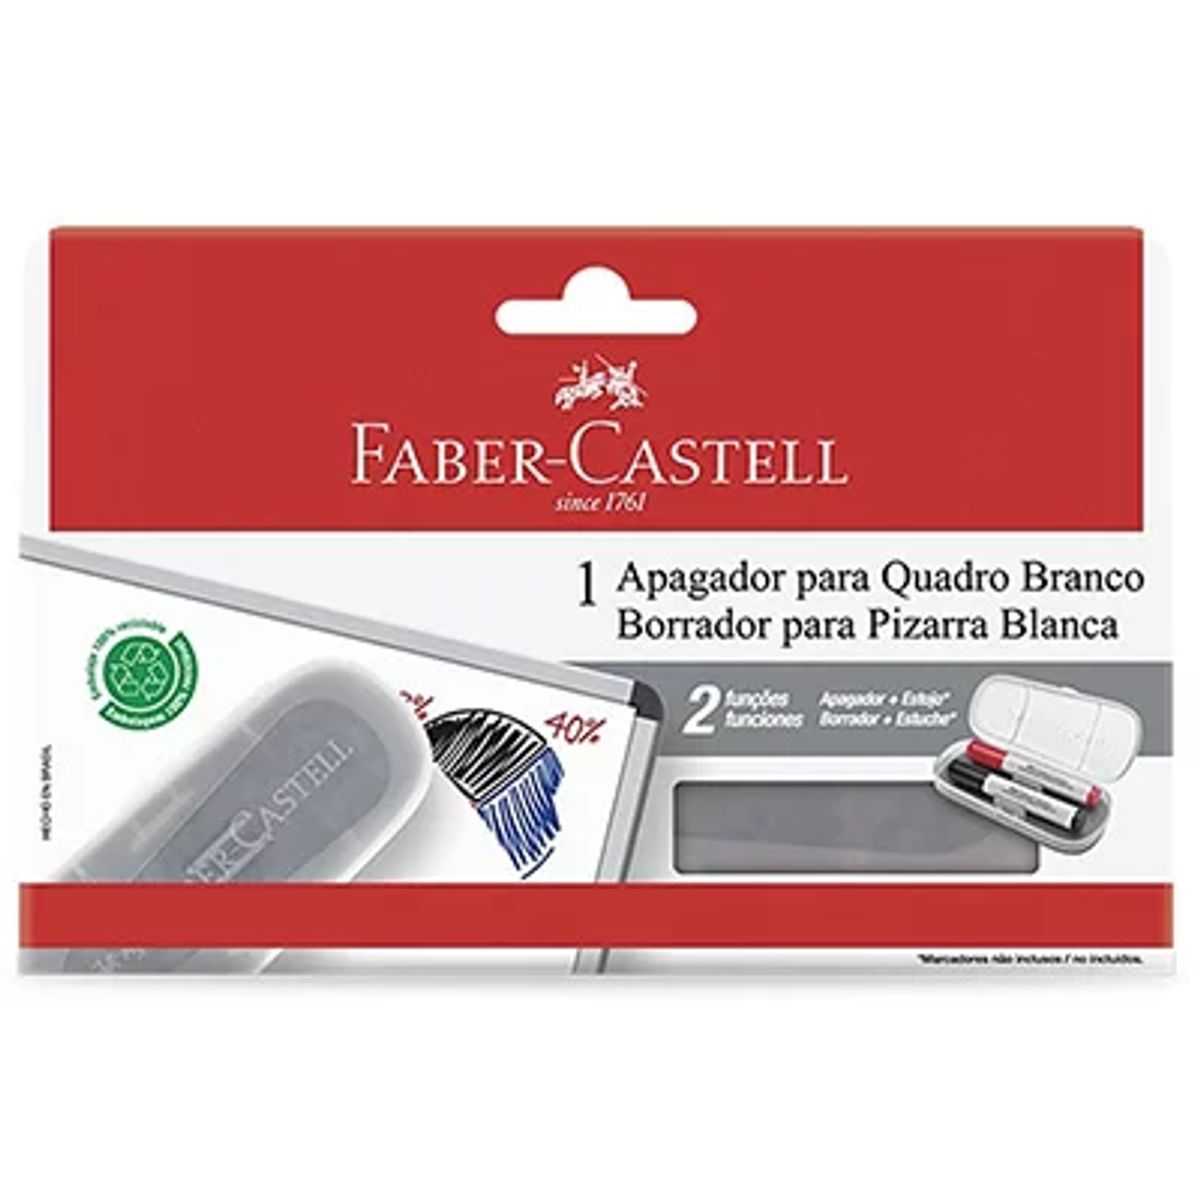 Apagador para Quadro Branco Faber Castell